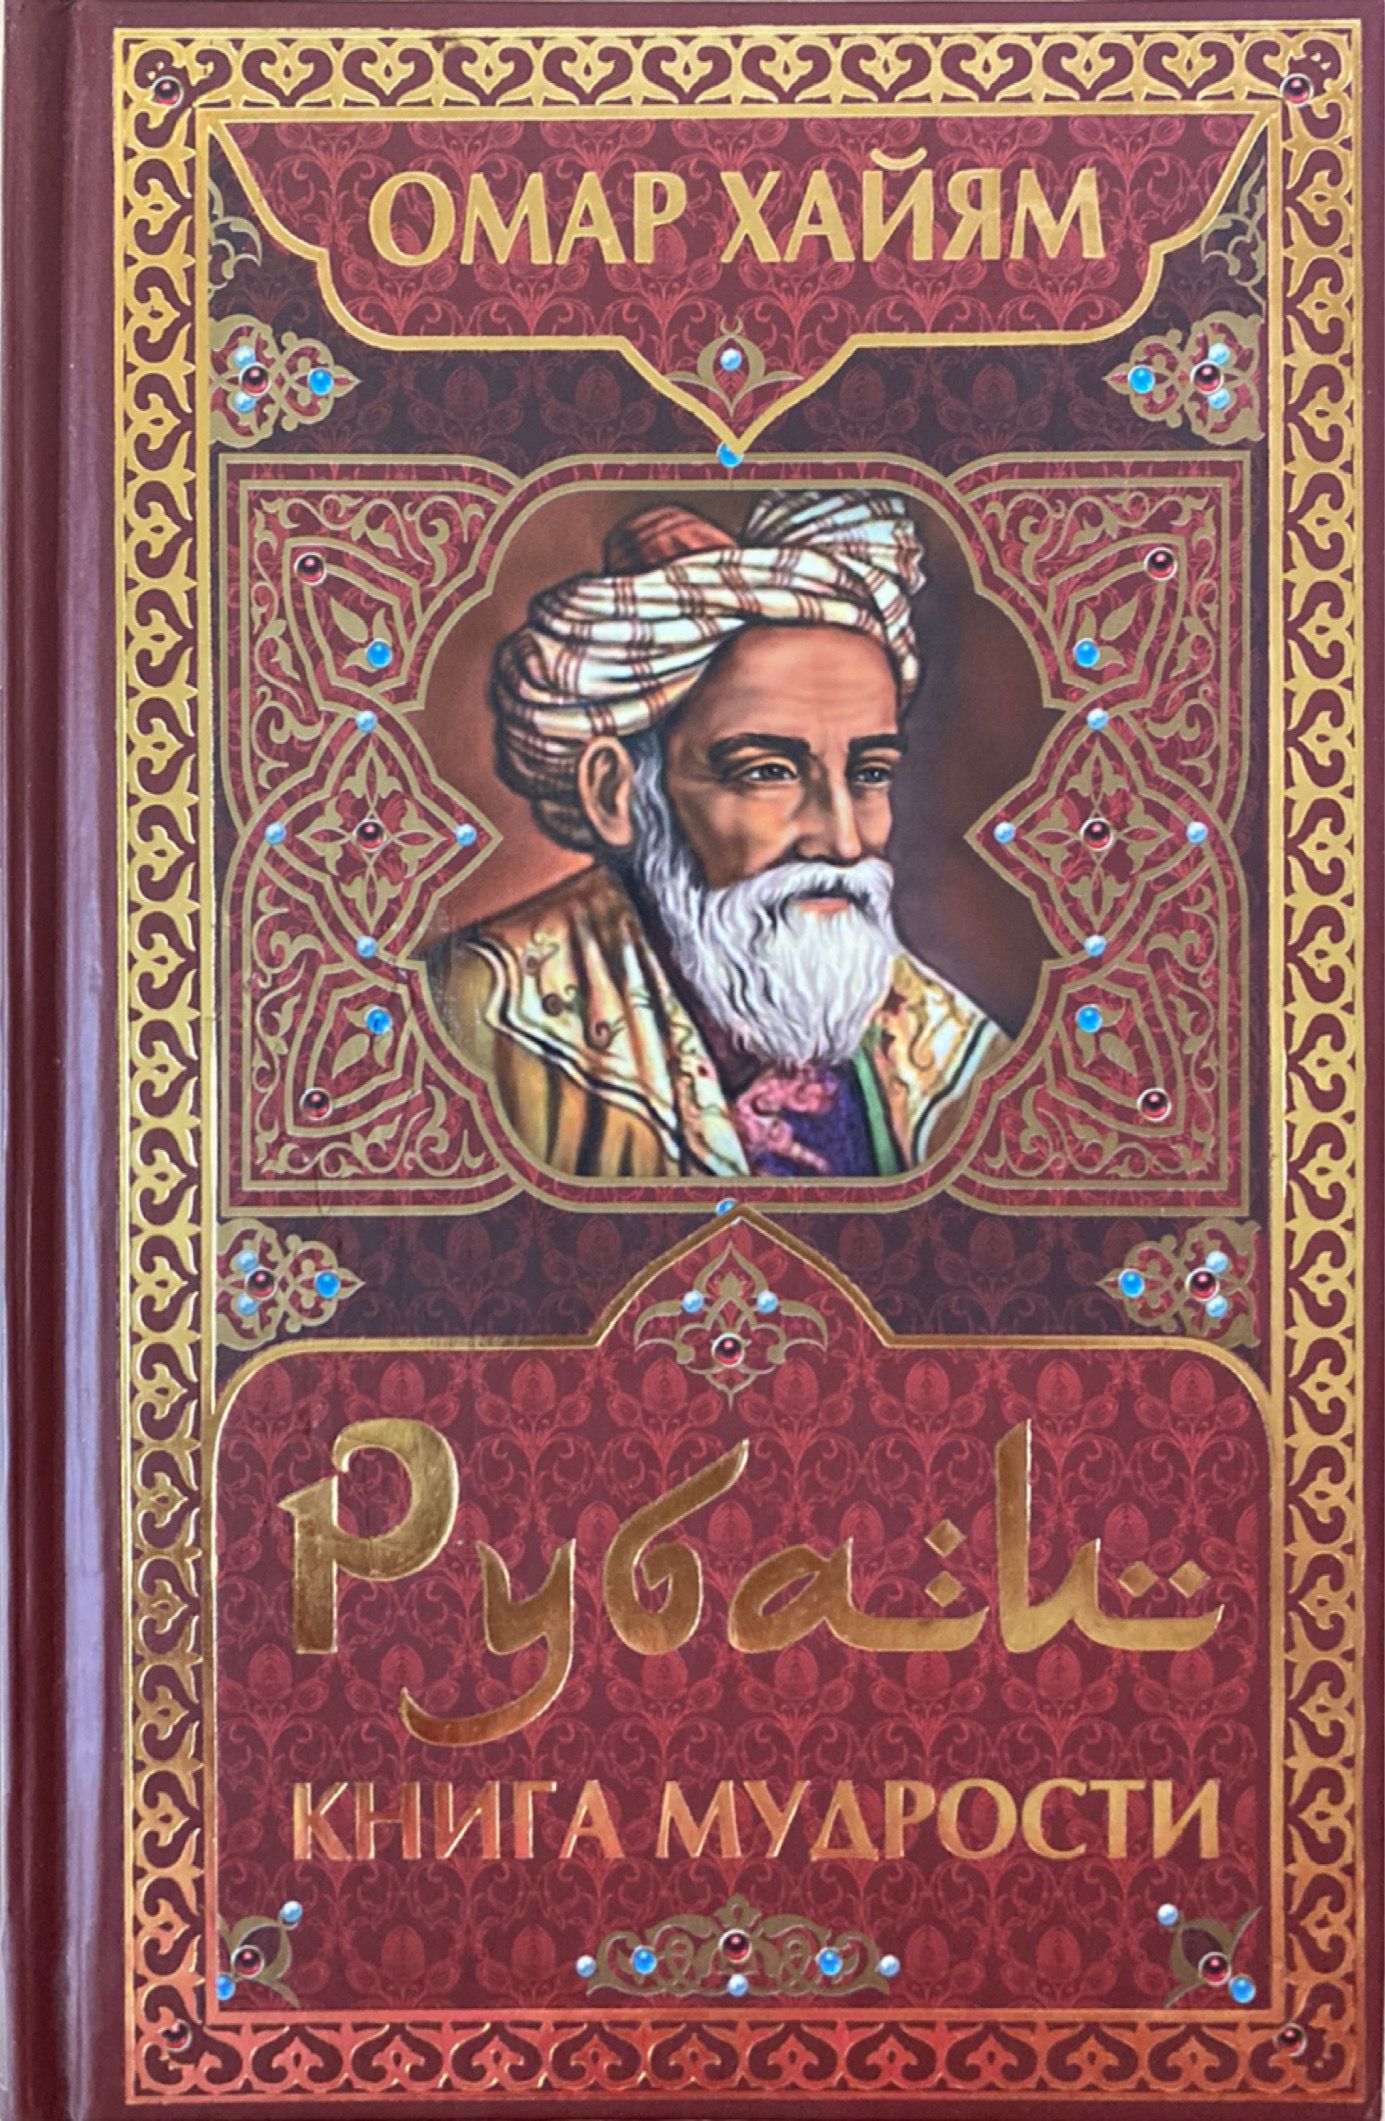 Хаям рубаи. Омар Хайям. Рубаи. Книга Рубаи (Хайям Омар). Книга Рубаи (Хайям о.). Рубаи мудрости Омар Хайям.